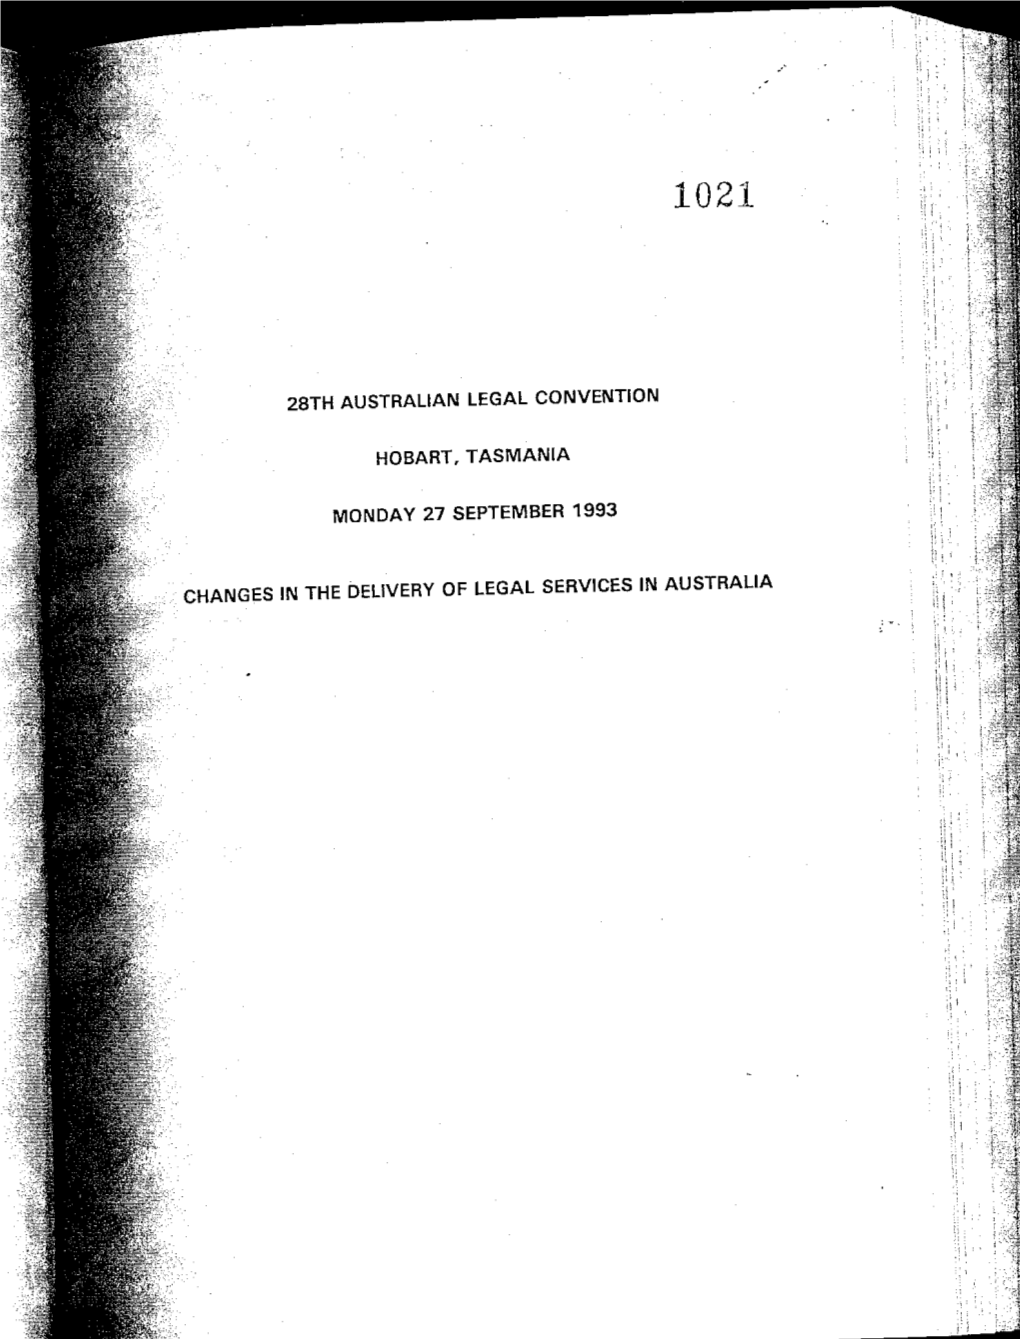 28Th Australian Legal Convention Hobart